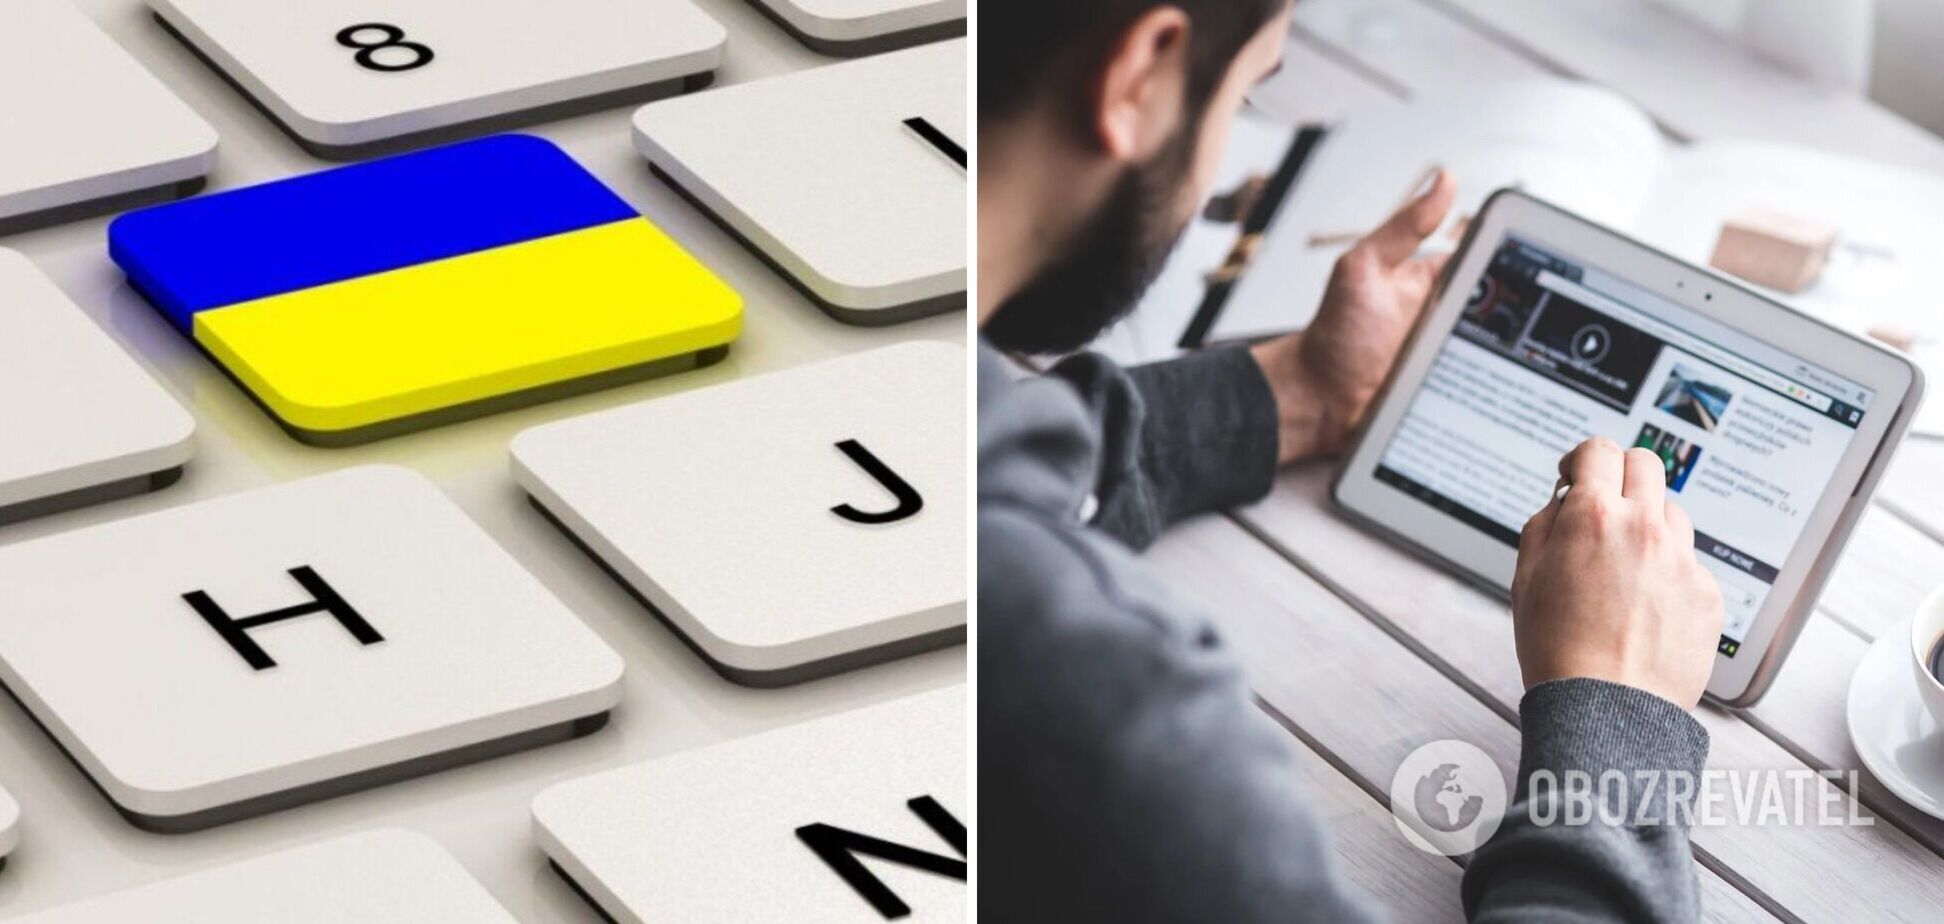 С 16 июля основной версией всех сайтов должна стать украинская